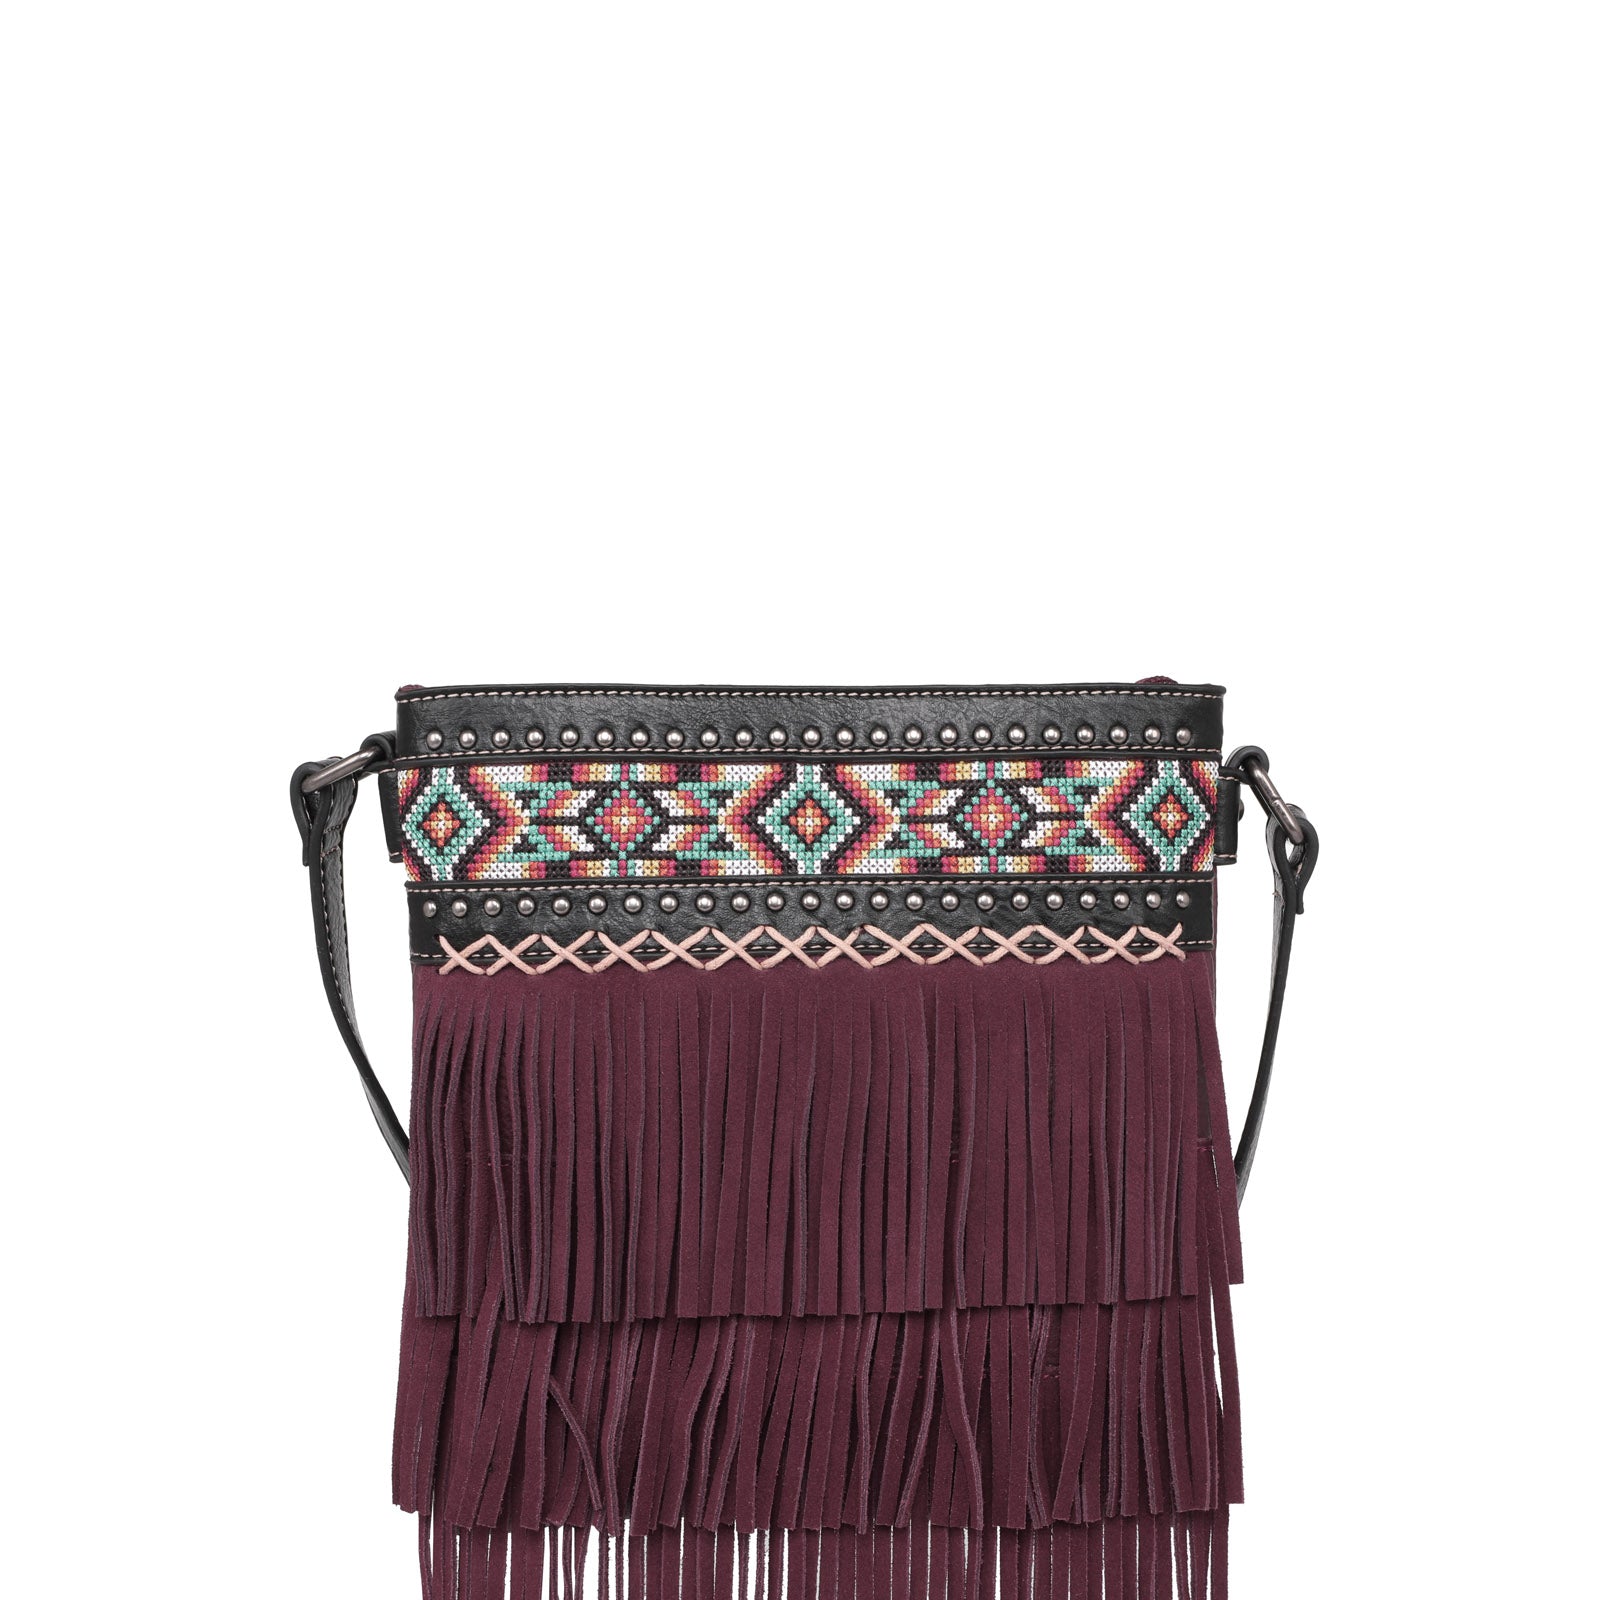 Navajo Print Handbag - Buy This Boho Purse| Jewelry Junkie – The Jewelry  Junkie